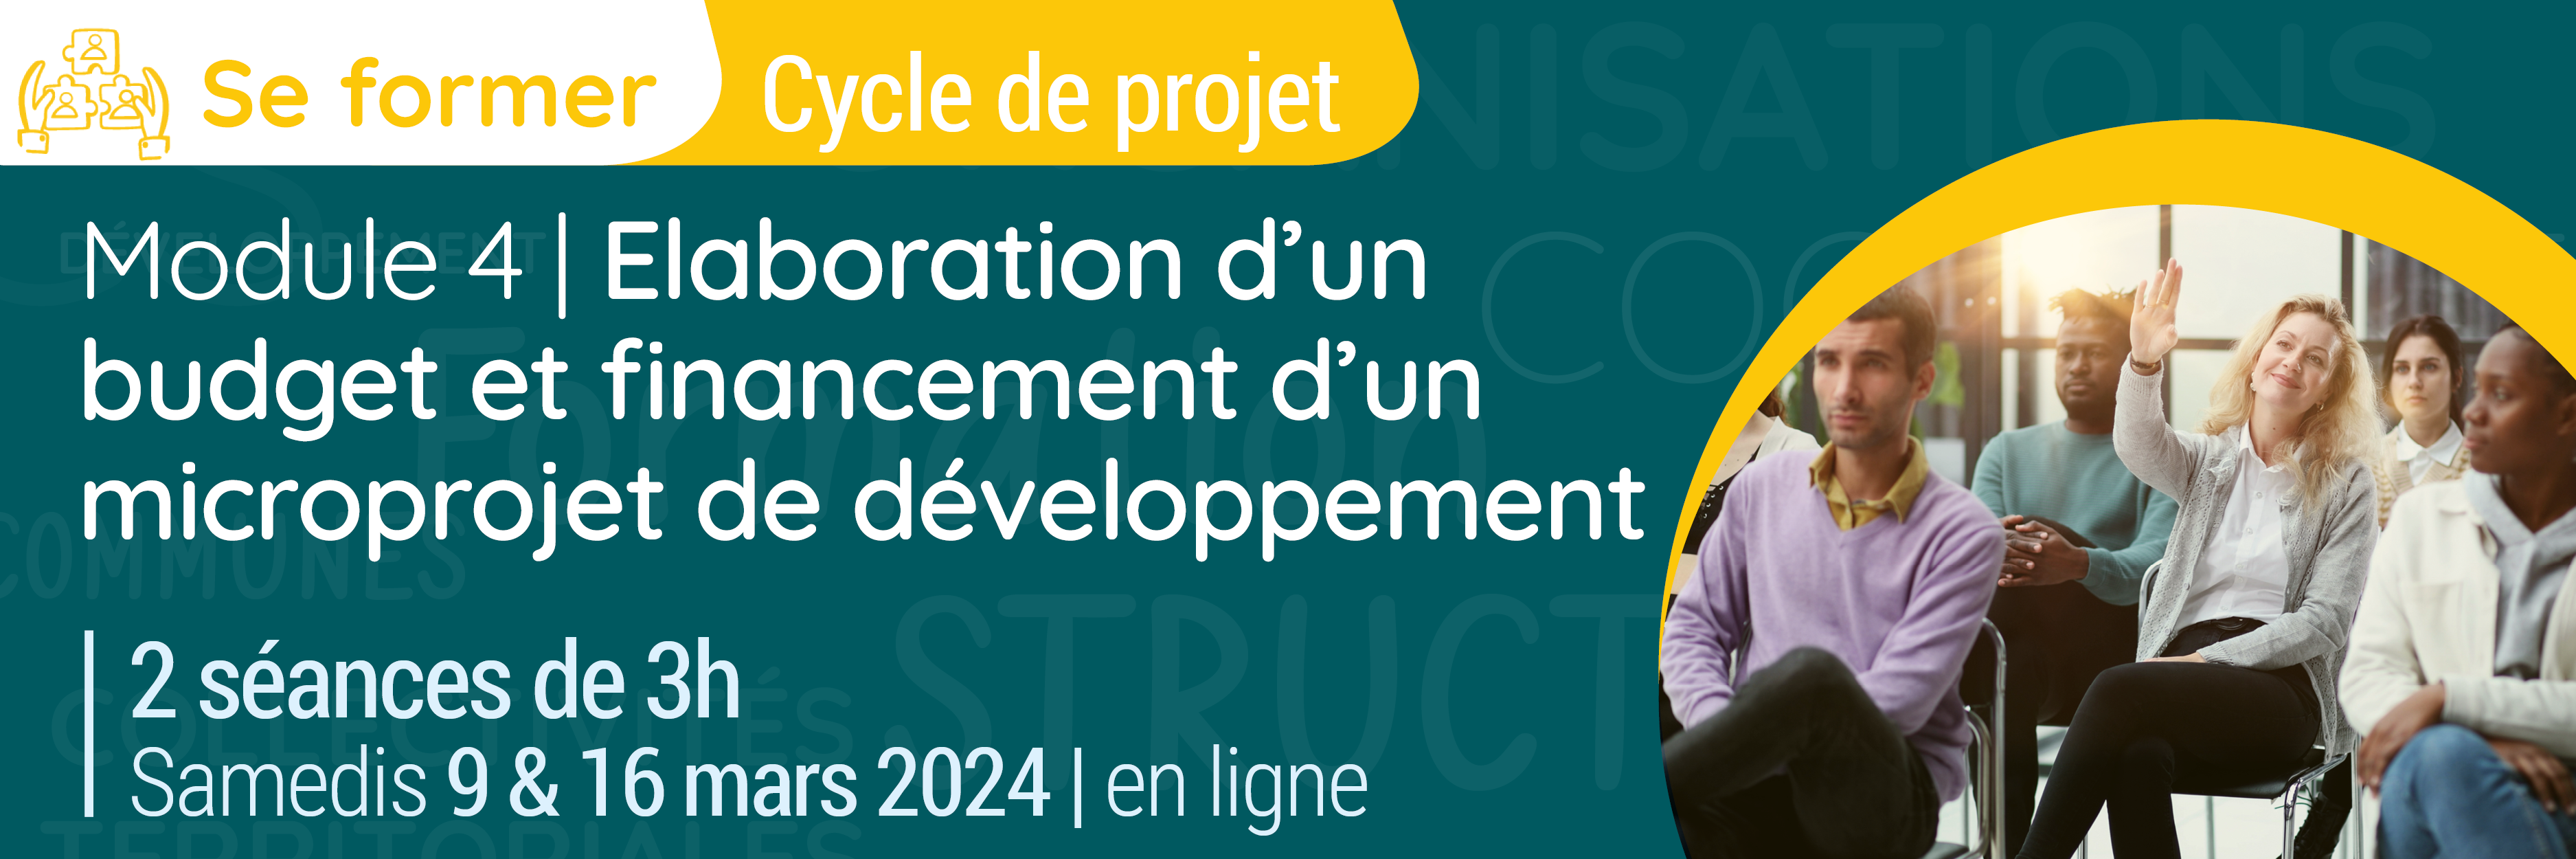 Formation Cycle de projet | Module 4 : Elaboration d’un budget et financement d'un microprojet de développement